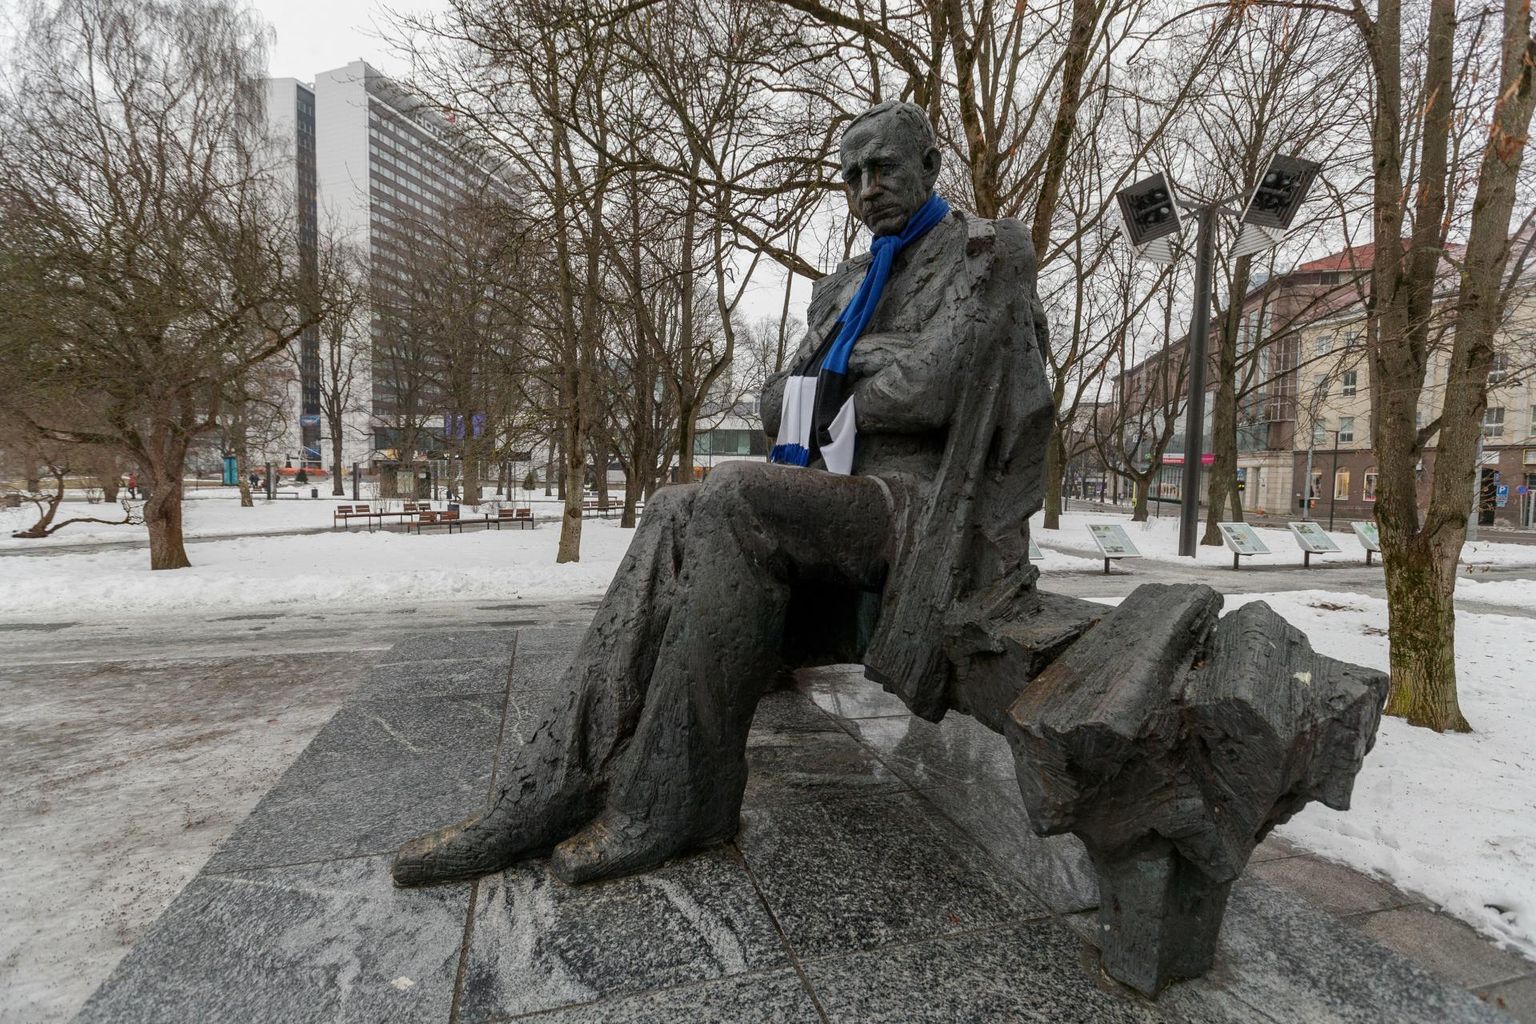 Eesti kirjanduse päeva tähistatakse Anton Hansen Tammsaare sünniaastapäeval, 30. jaanuaril. Pildil kirjaniku kuju Tallinnas Tammsaare pargis.